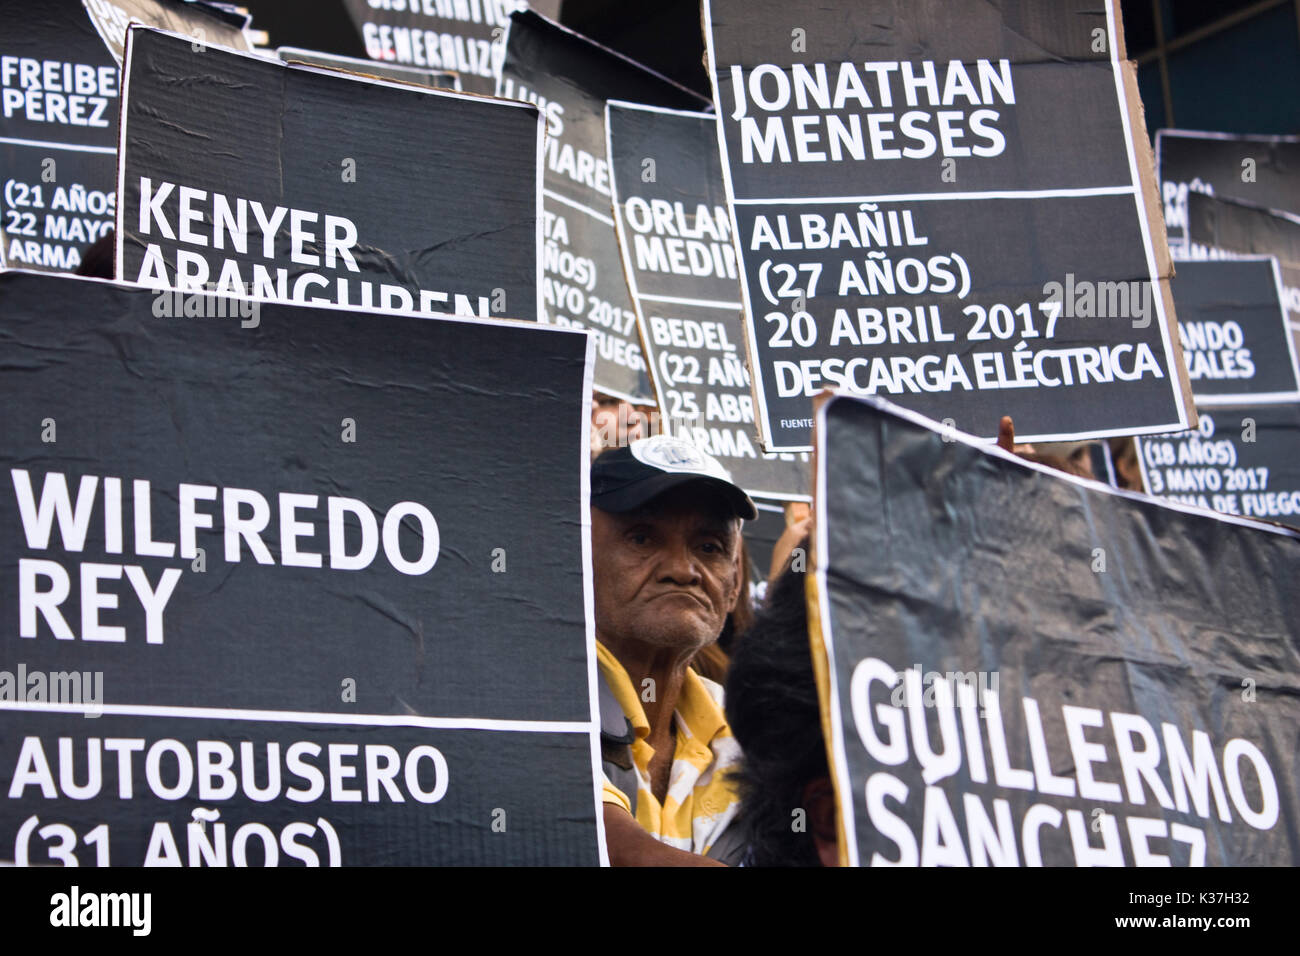 Un gruppo di manifestanti pacifici in attesa di cartoni con i nomi dei defunti manifestanti durante le proteste contro il governo di Nicolás Maduro. Foto Stock